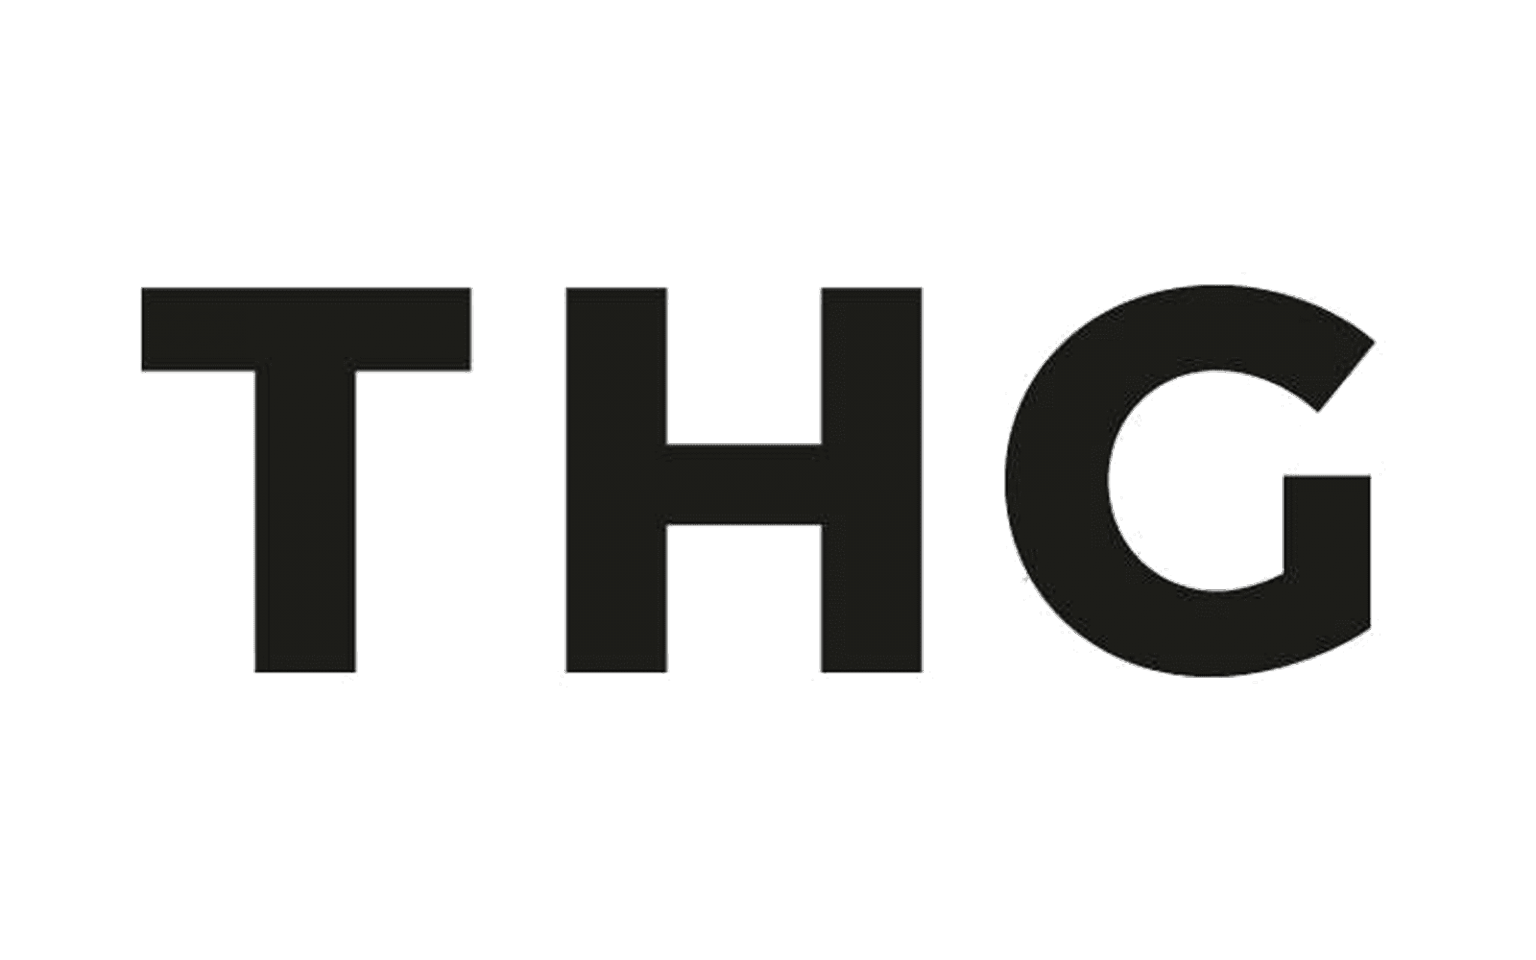 Thg Logo